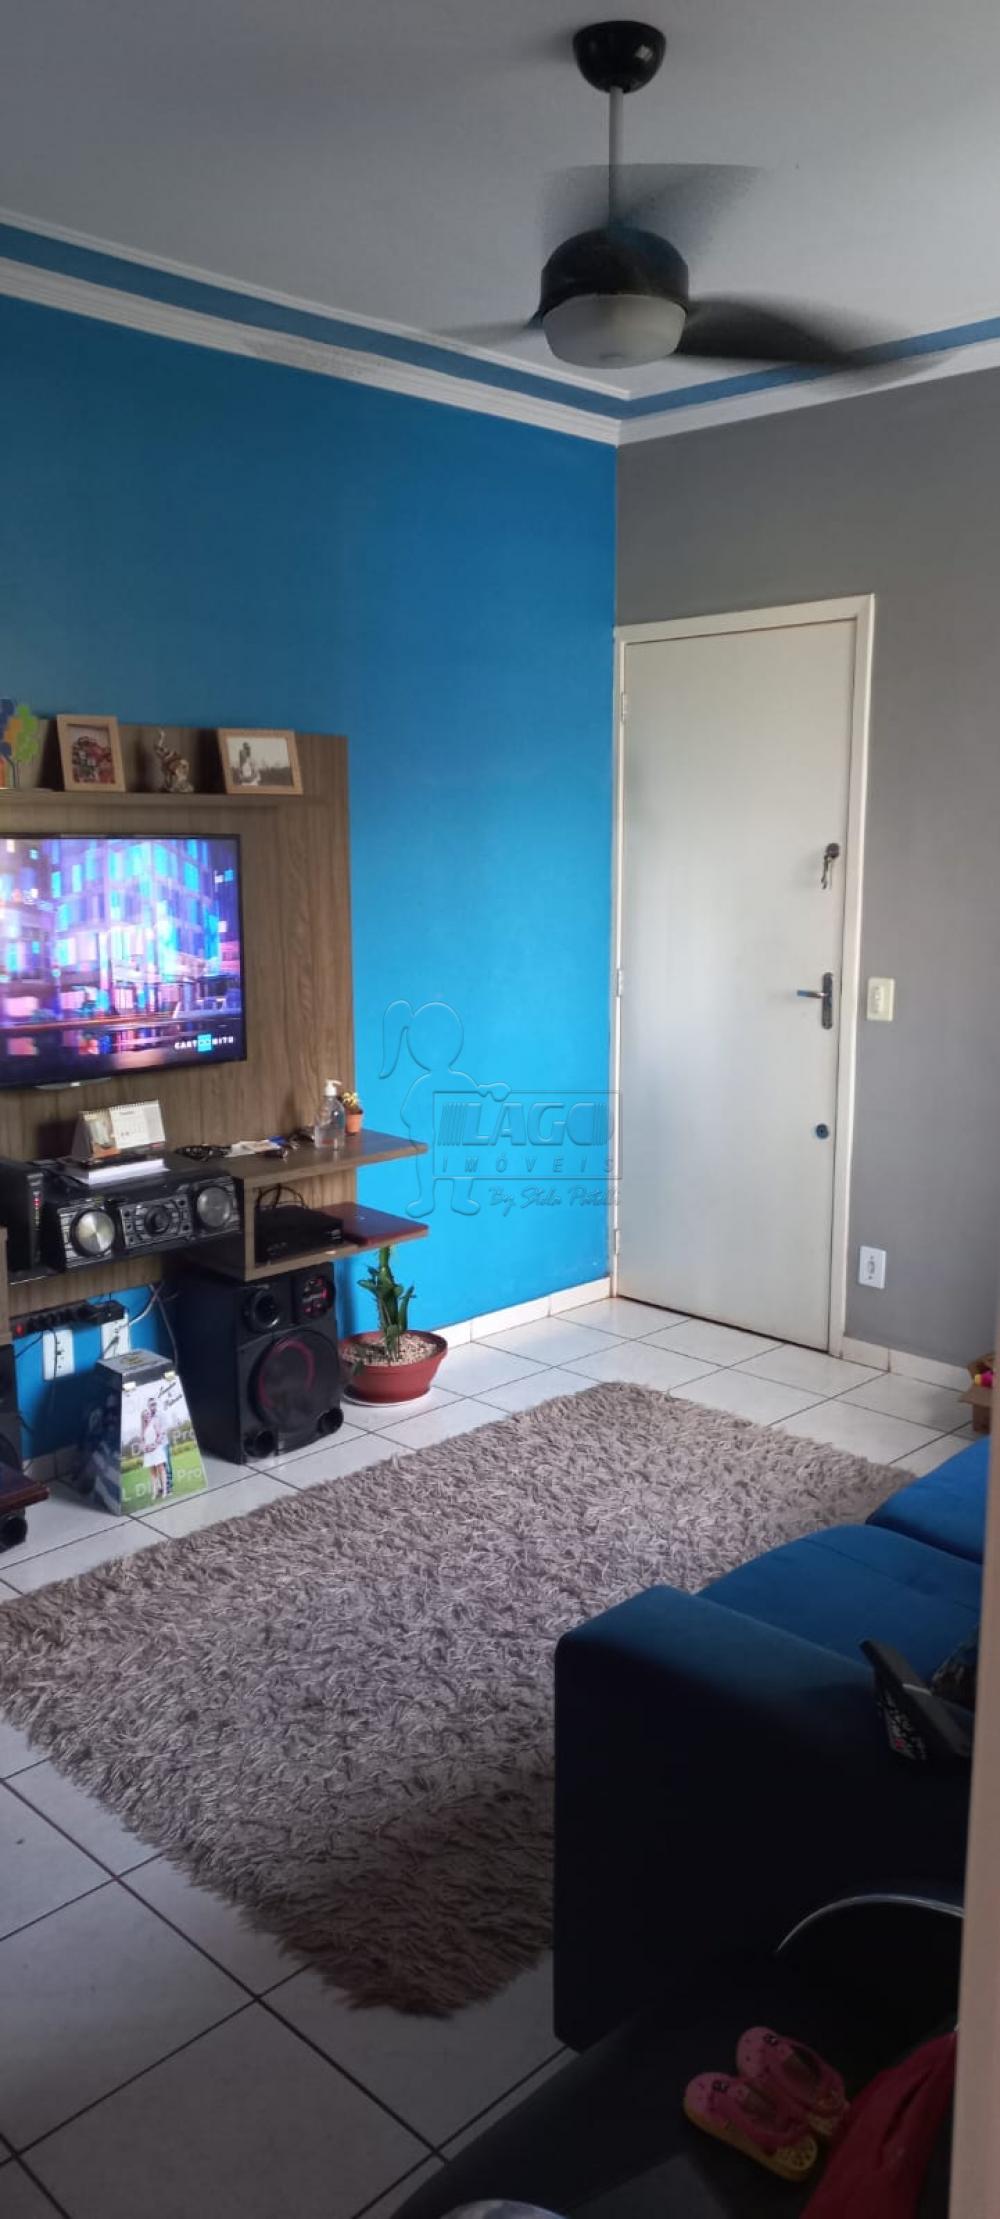 Comprar Apartamento / Padrão em Ribeirão Preto R$ 120.000,00 - Foto 3